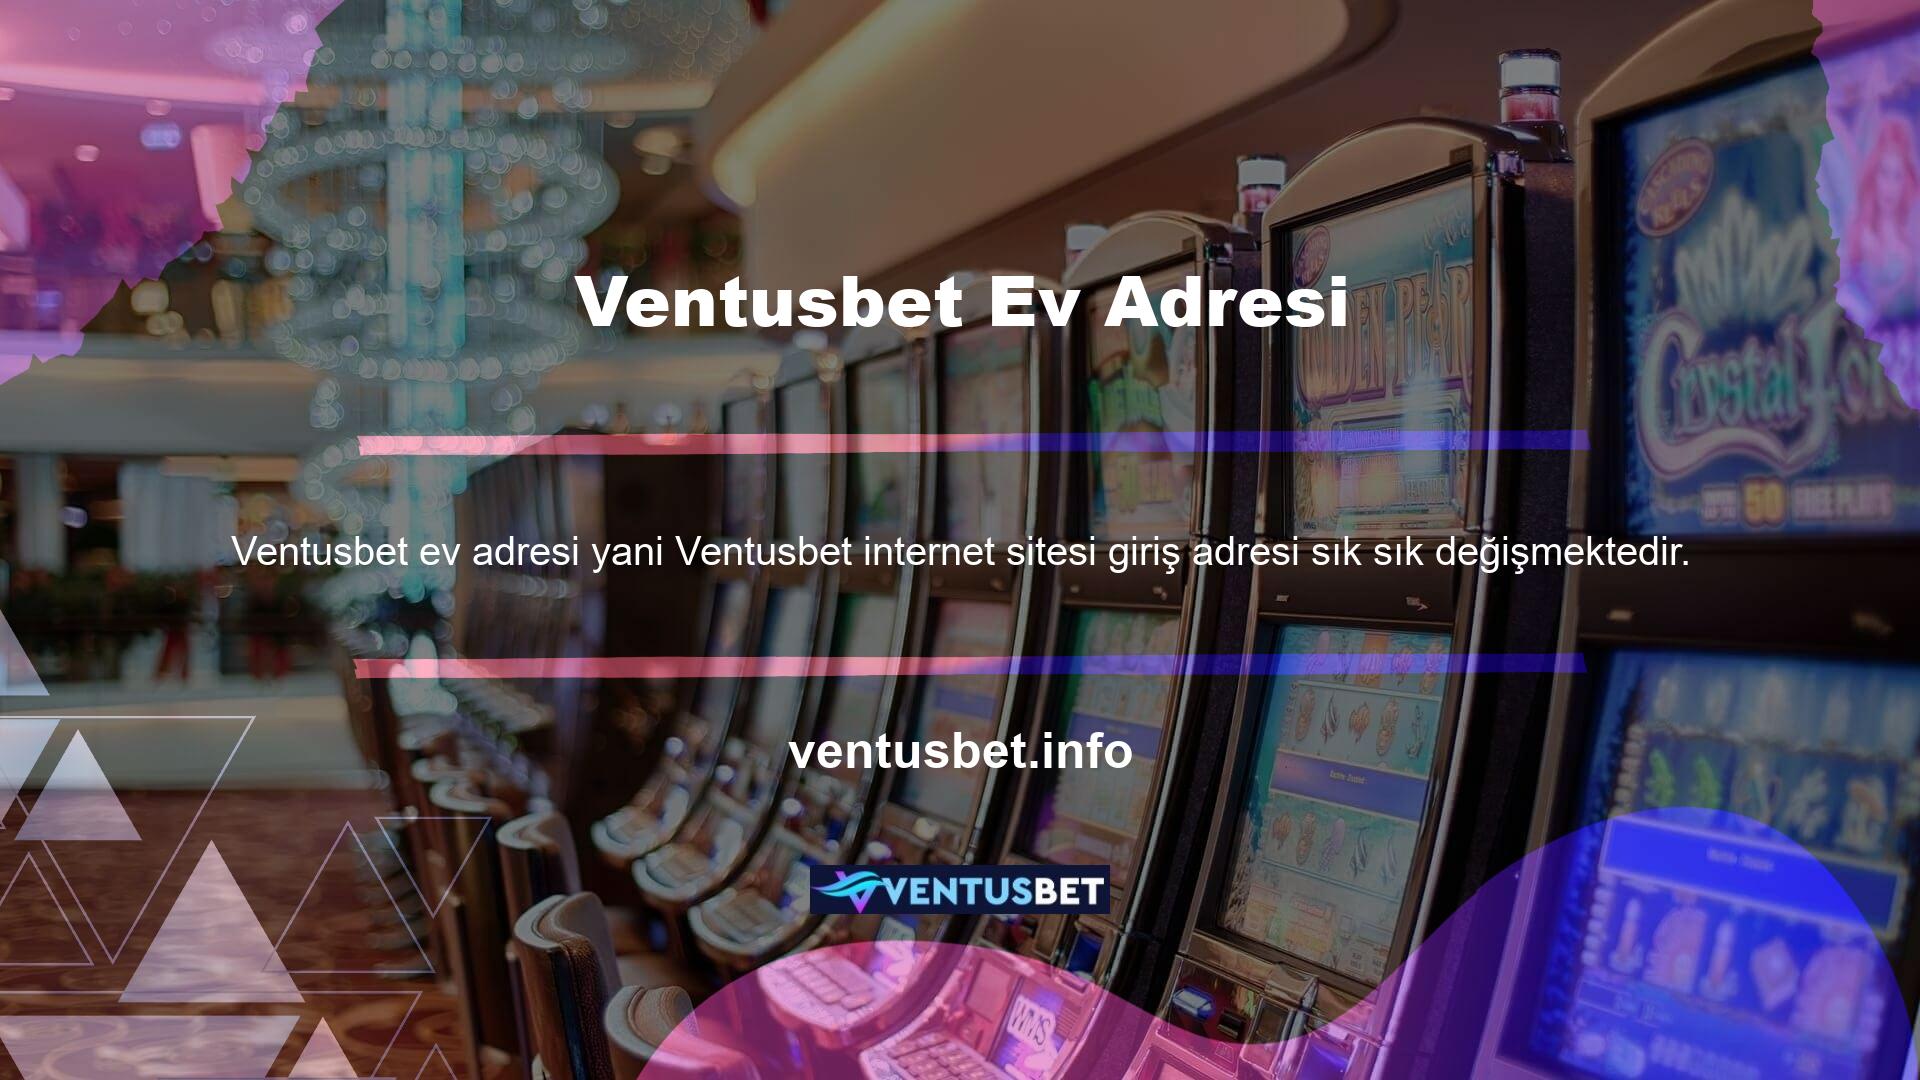 Alternatif olarak, arama motoruna Ventusbet için yeni bir giriş girerek Ventusbet ile bağlantı kurabilirsiniz